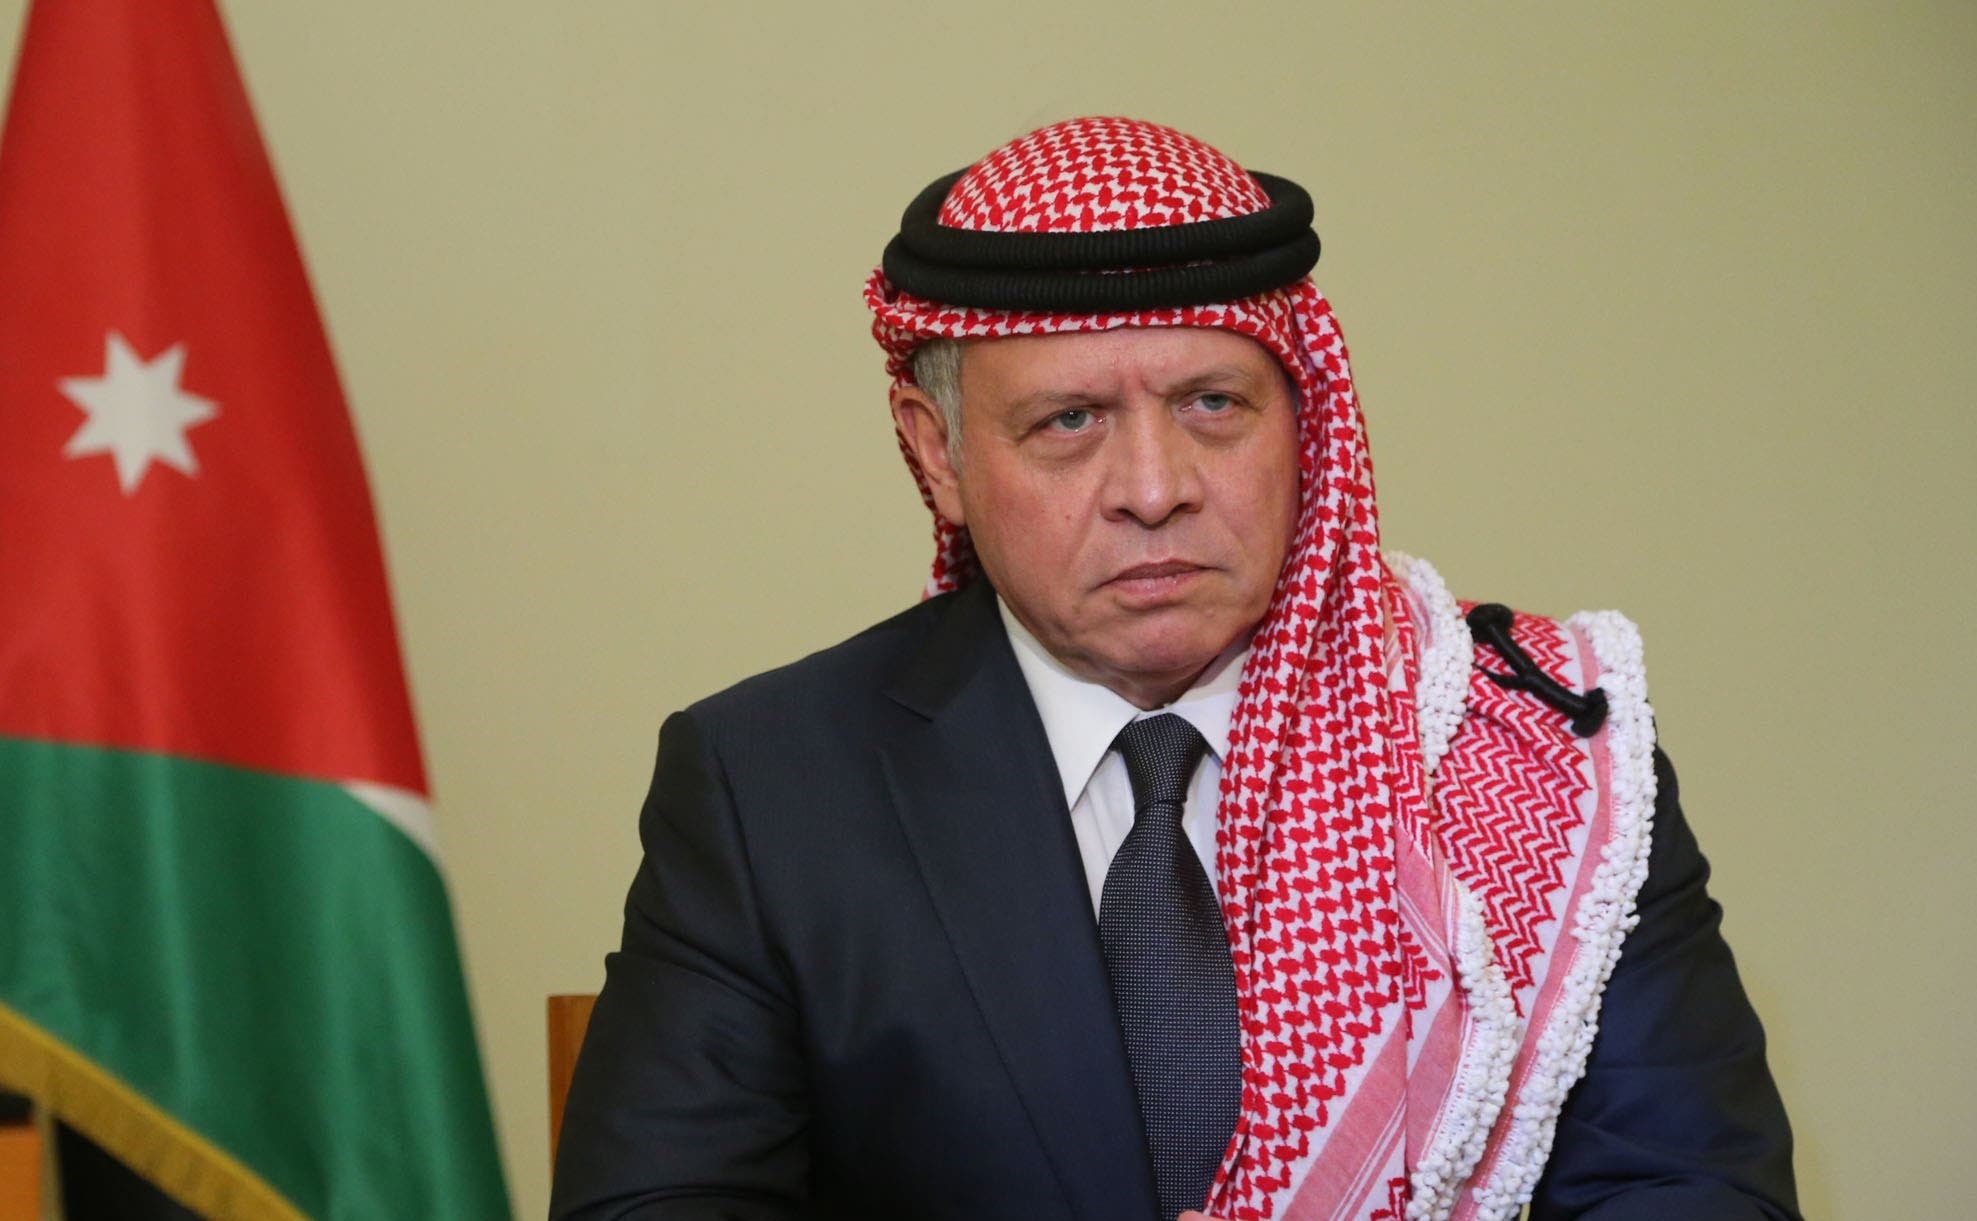 El rey de Jordania, el primer líder árabe en llamar a Biden tras su elección